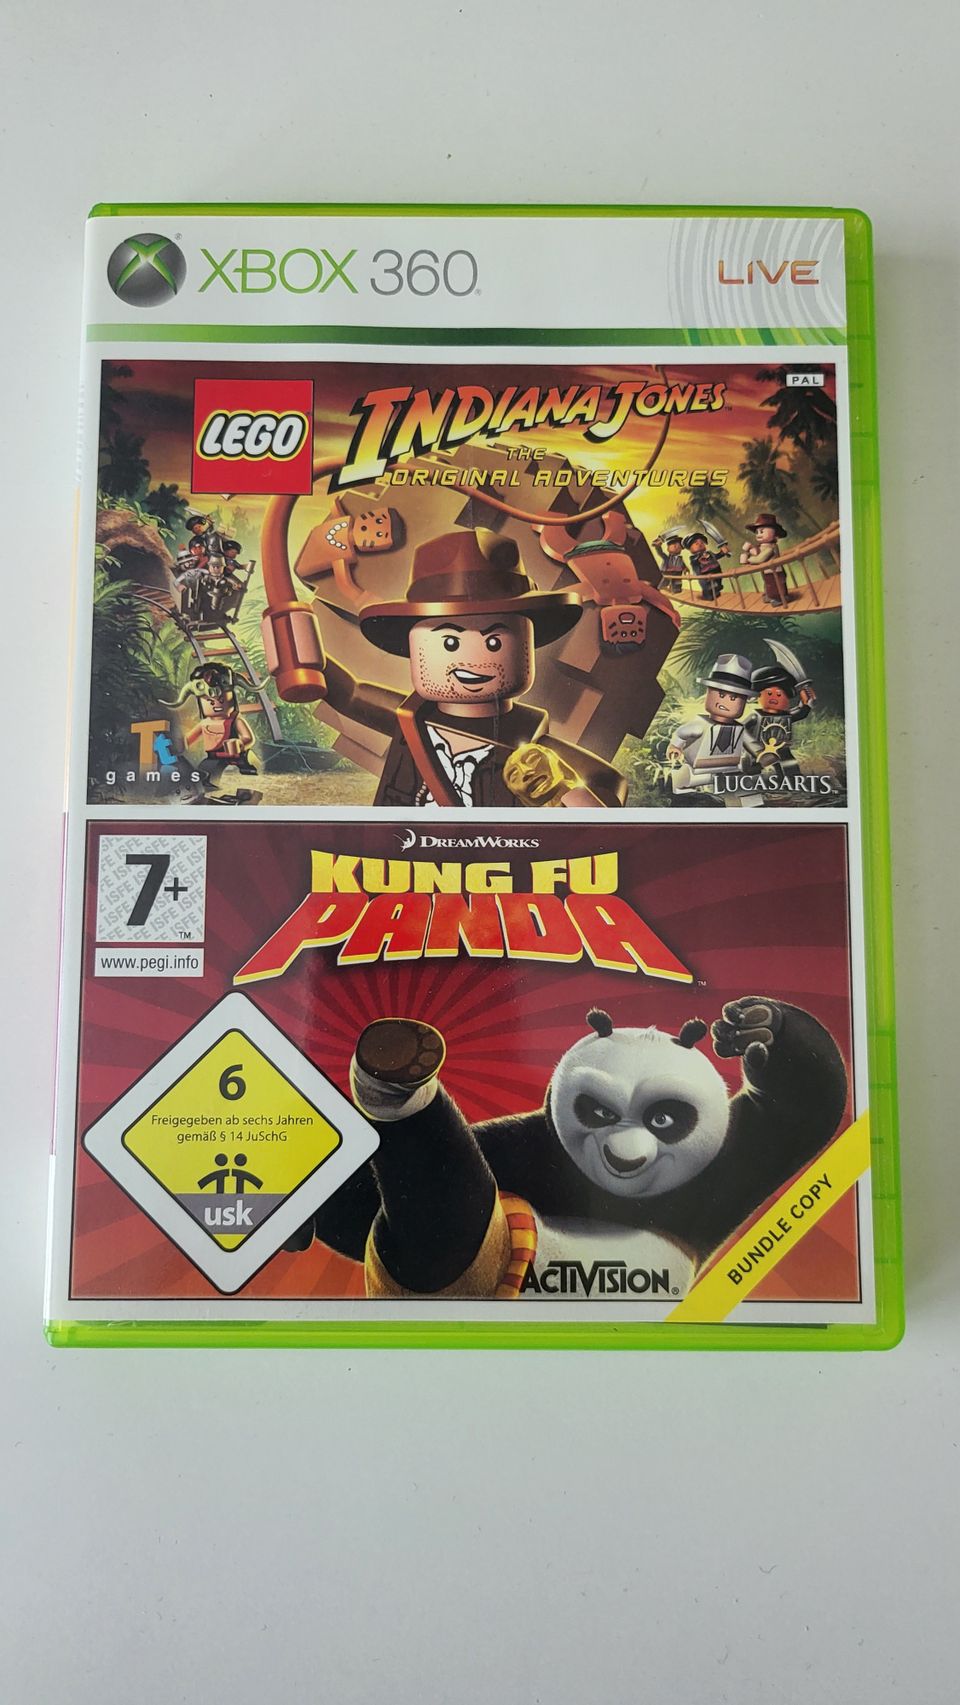 Xbox 360 Kungfu panda & Indiana Jones